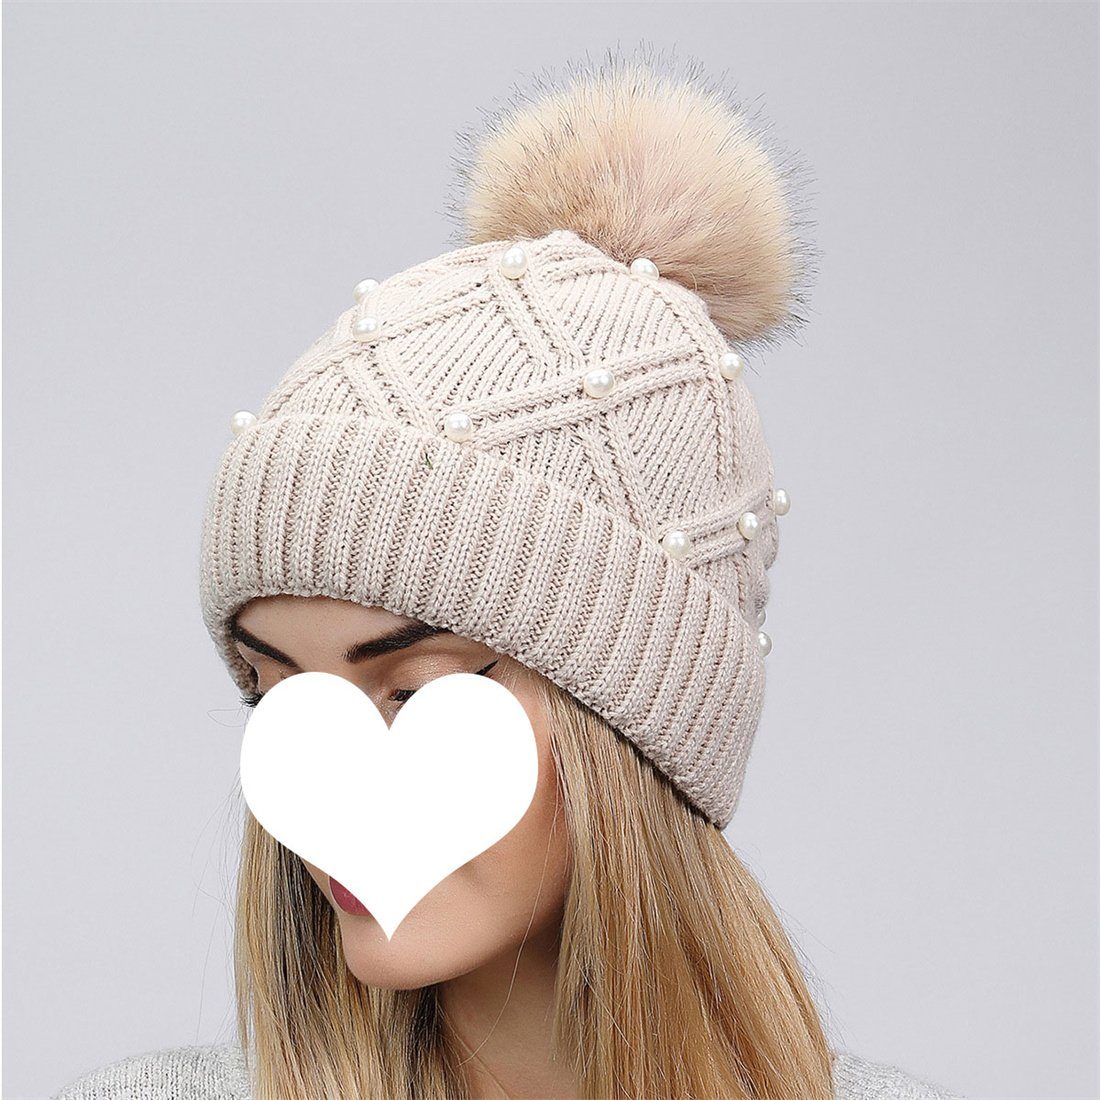 Woolen Cap Cap, Hairball Strickmütze Winter Knitted Fashion Warm Thickened DÖRÖY Weiß Women's